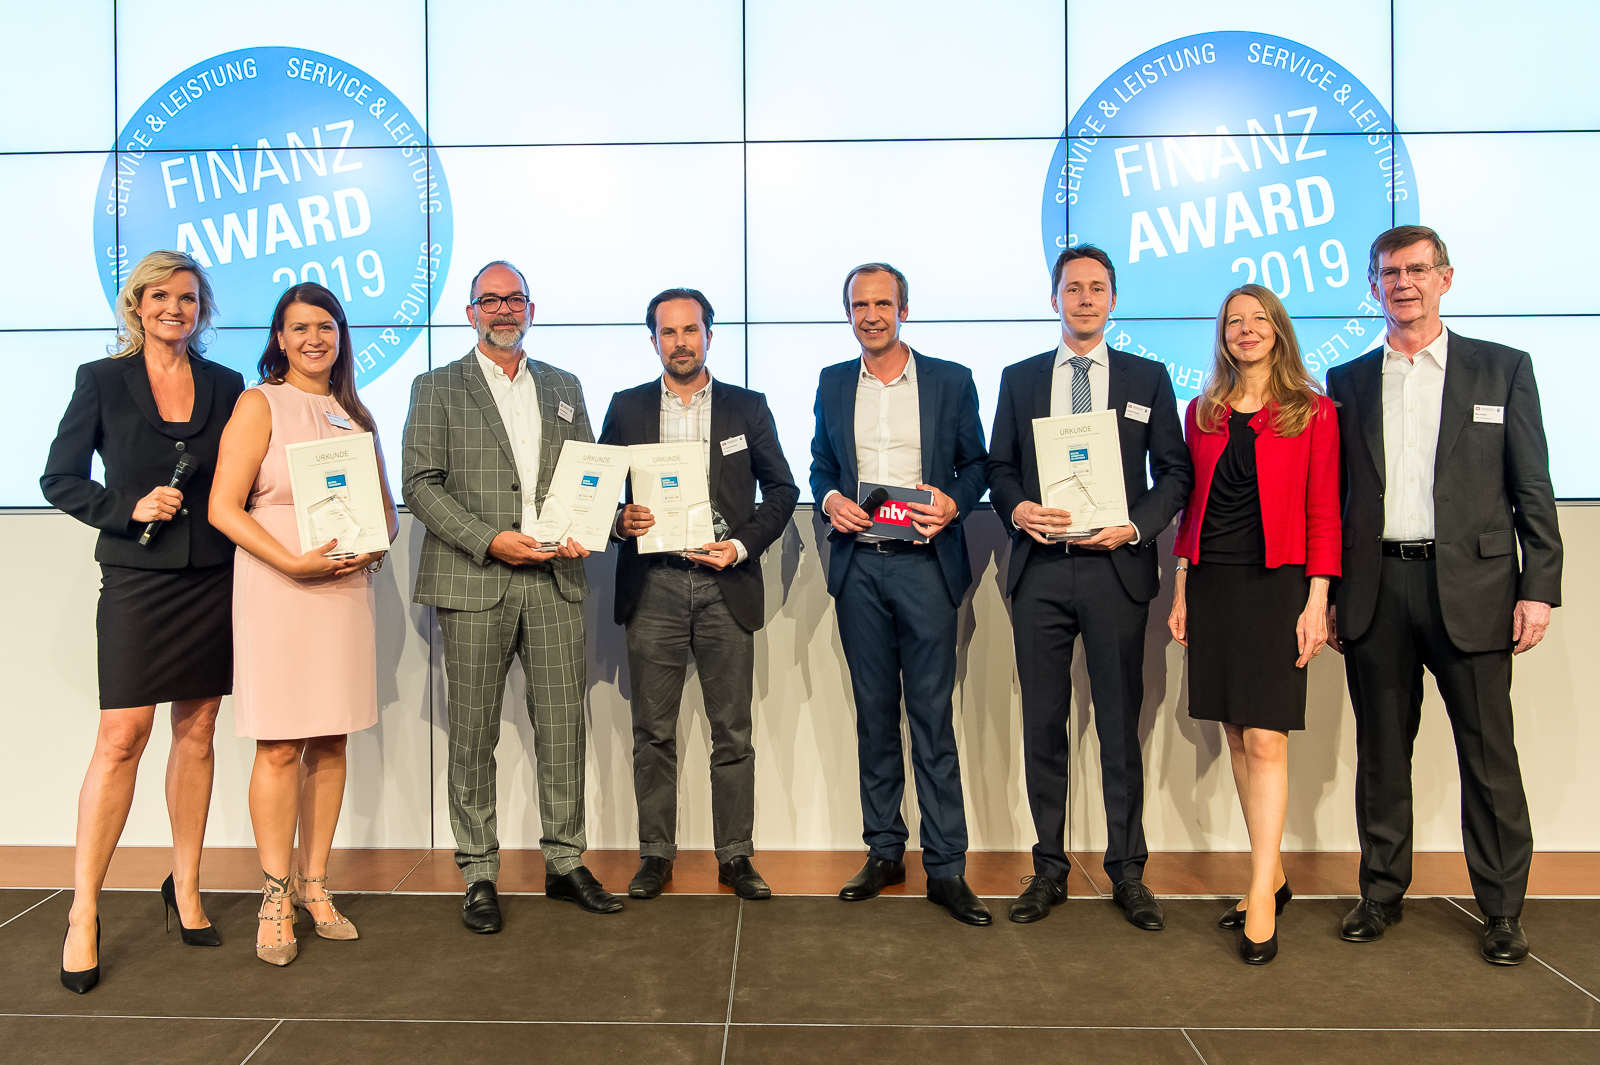 Advanzia Bank remporte le prix du meilleur placement financier aux « Finanz-Awards 2019 » avec son Advanziakonto